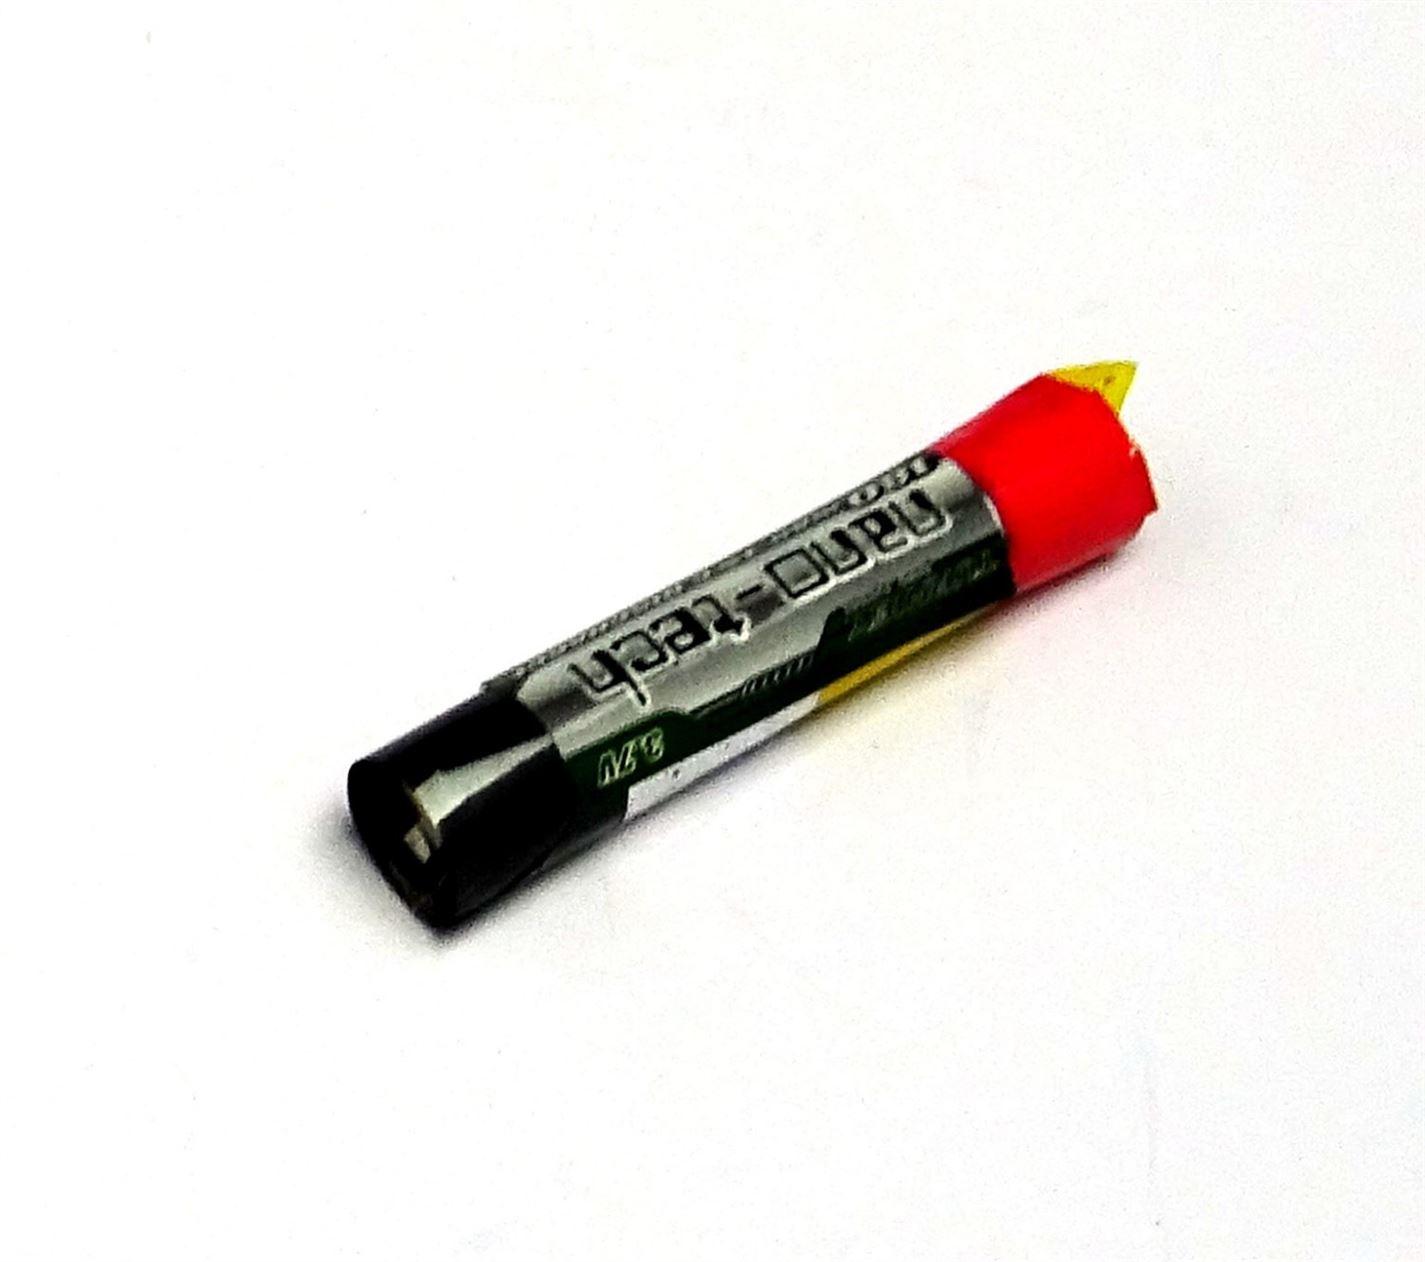 Turnigy Nano-Tech 180mAh 1s 15c Round Lipo Battery - UK Seller